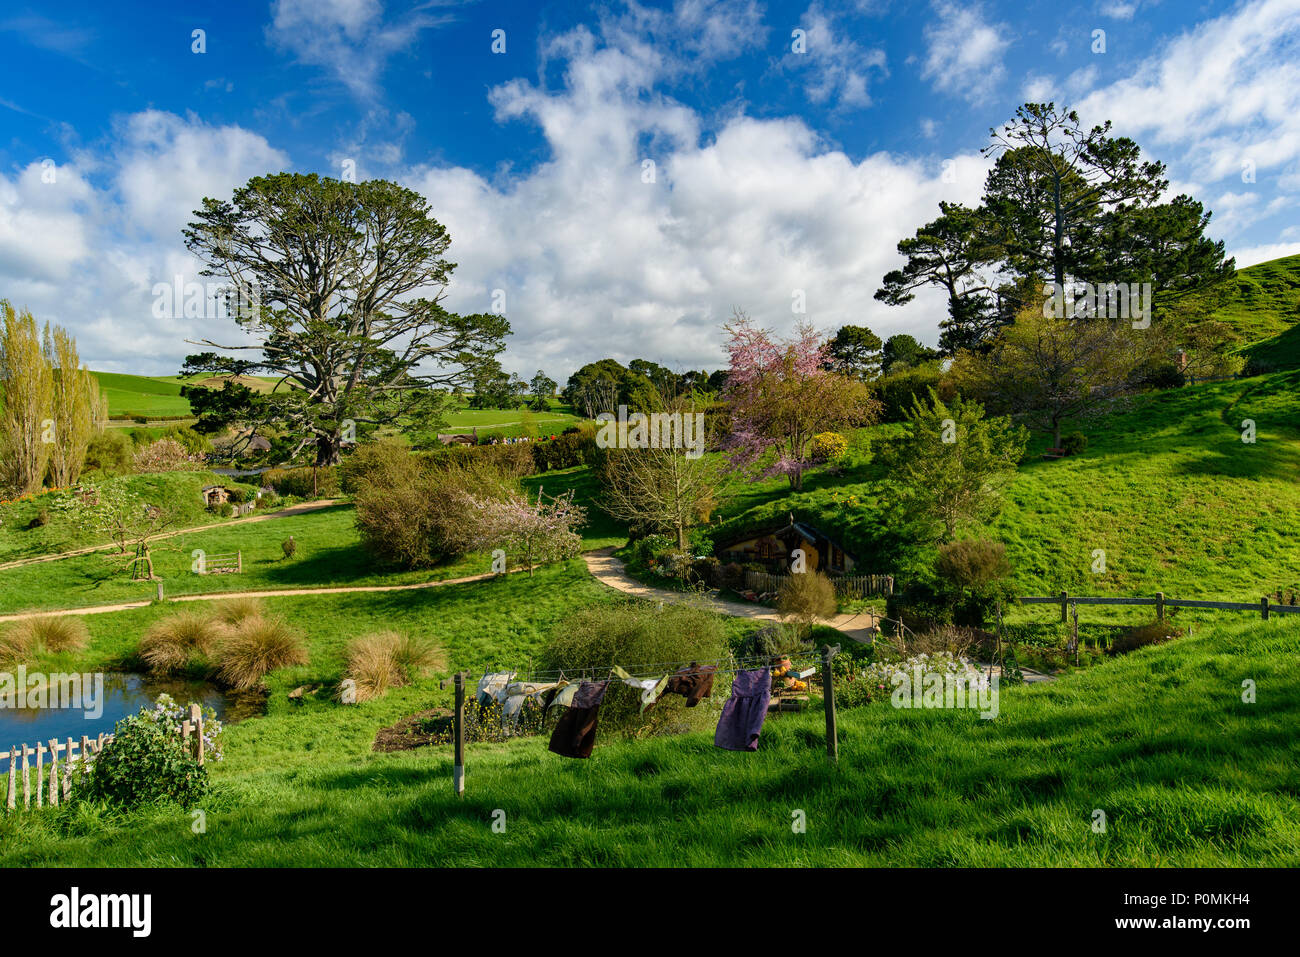 Hobbiton Movie set di Shire nel Signore degli Anelli e Lo Hobbit trilogie, Matamata, Nuova Zelanda Foto Stock